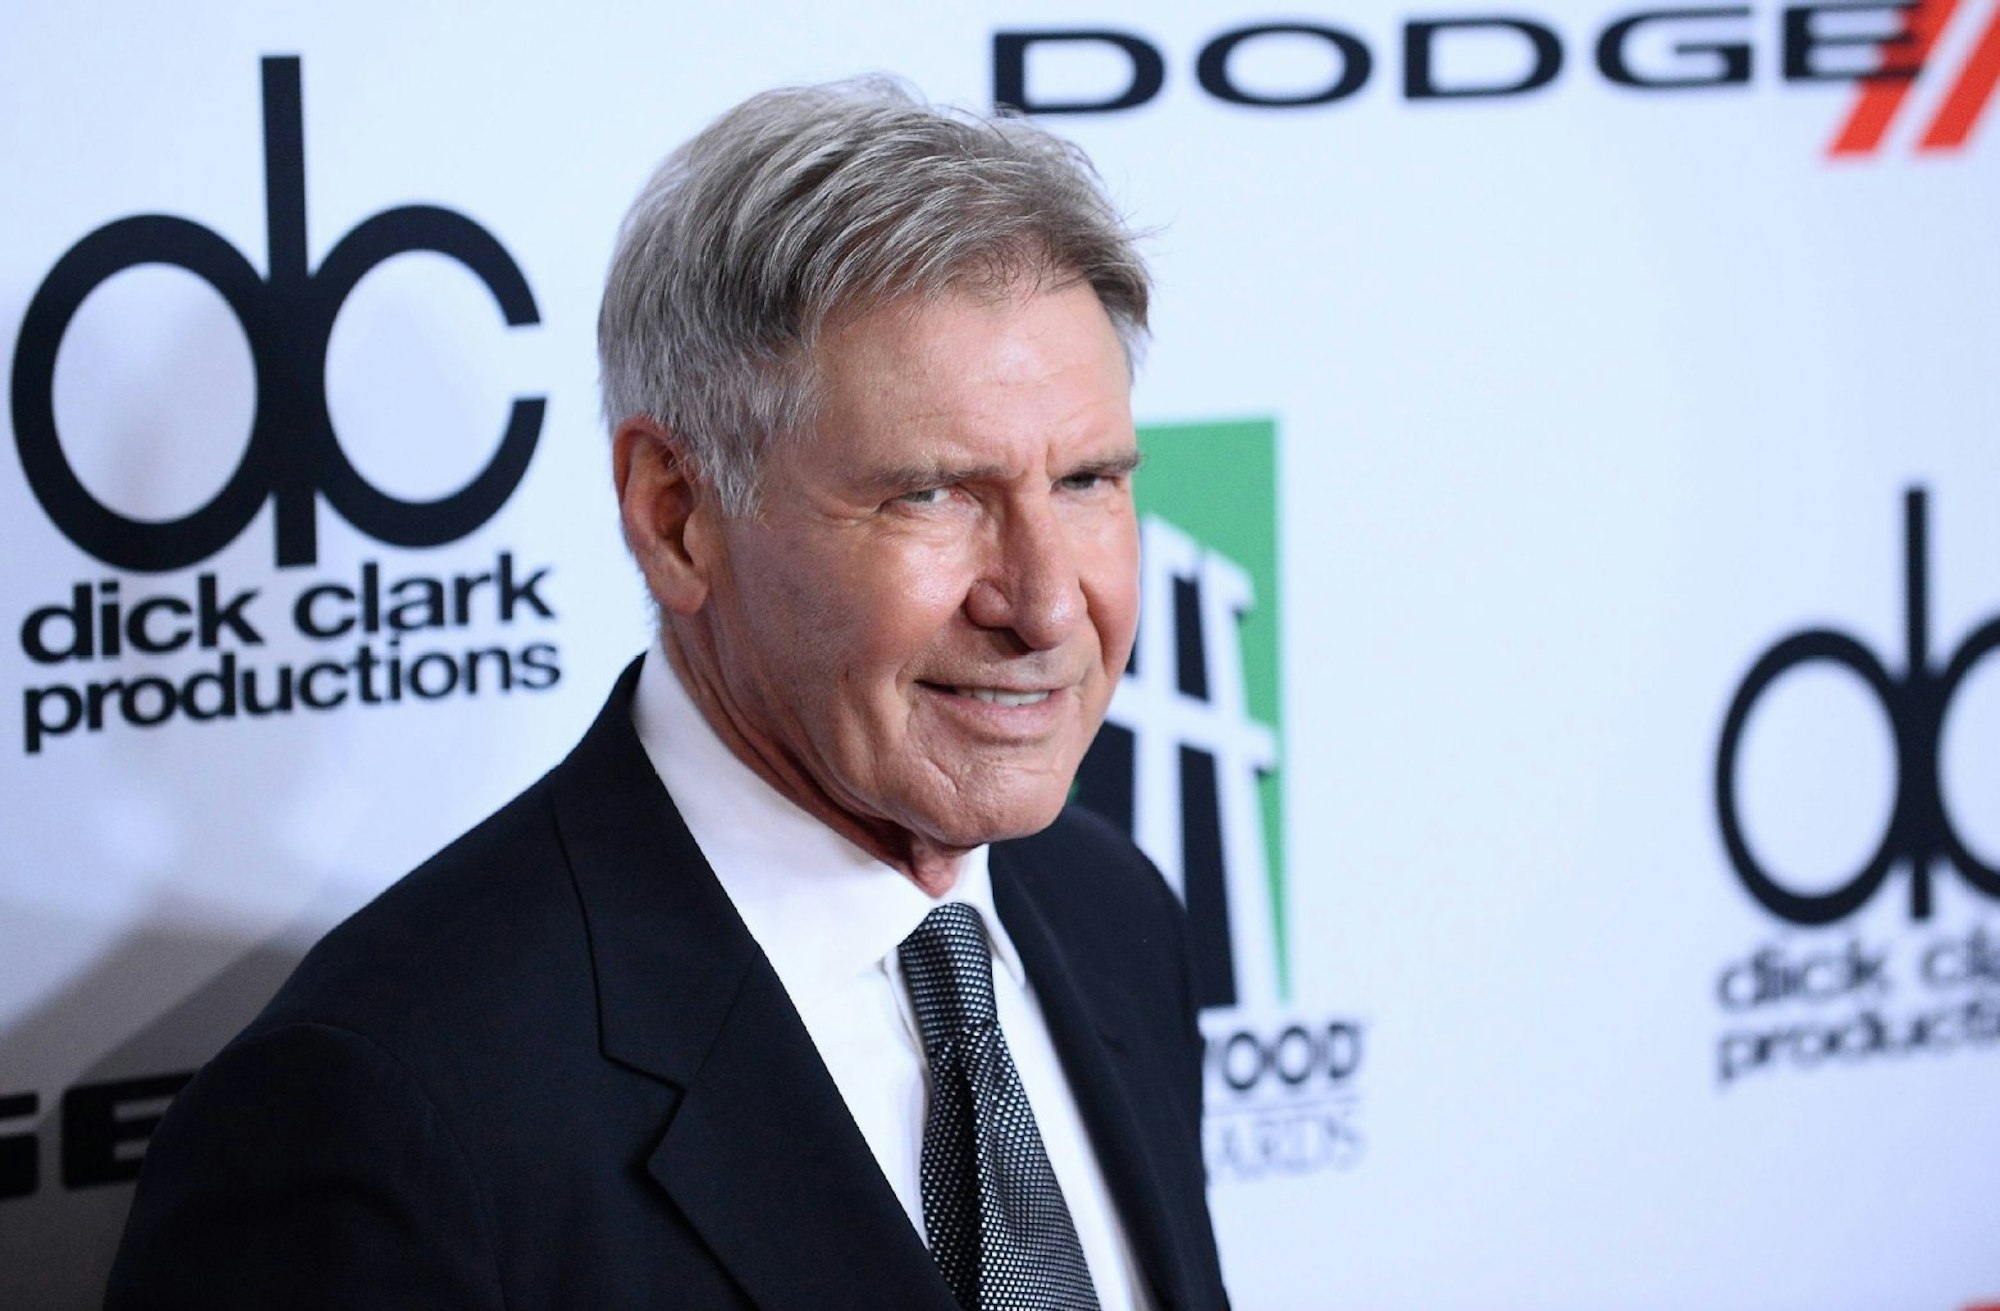 Harrison Ford bekam für seine großartigen Rollen noch keinen Oscar.